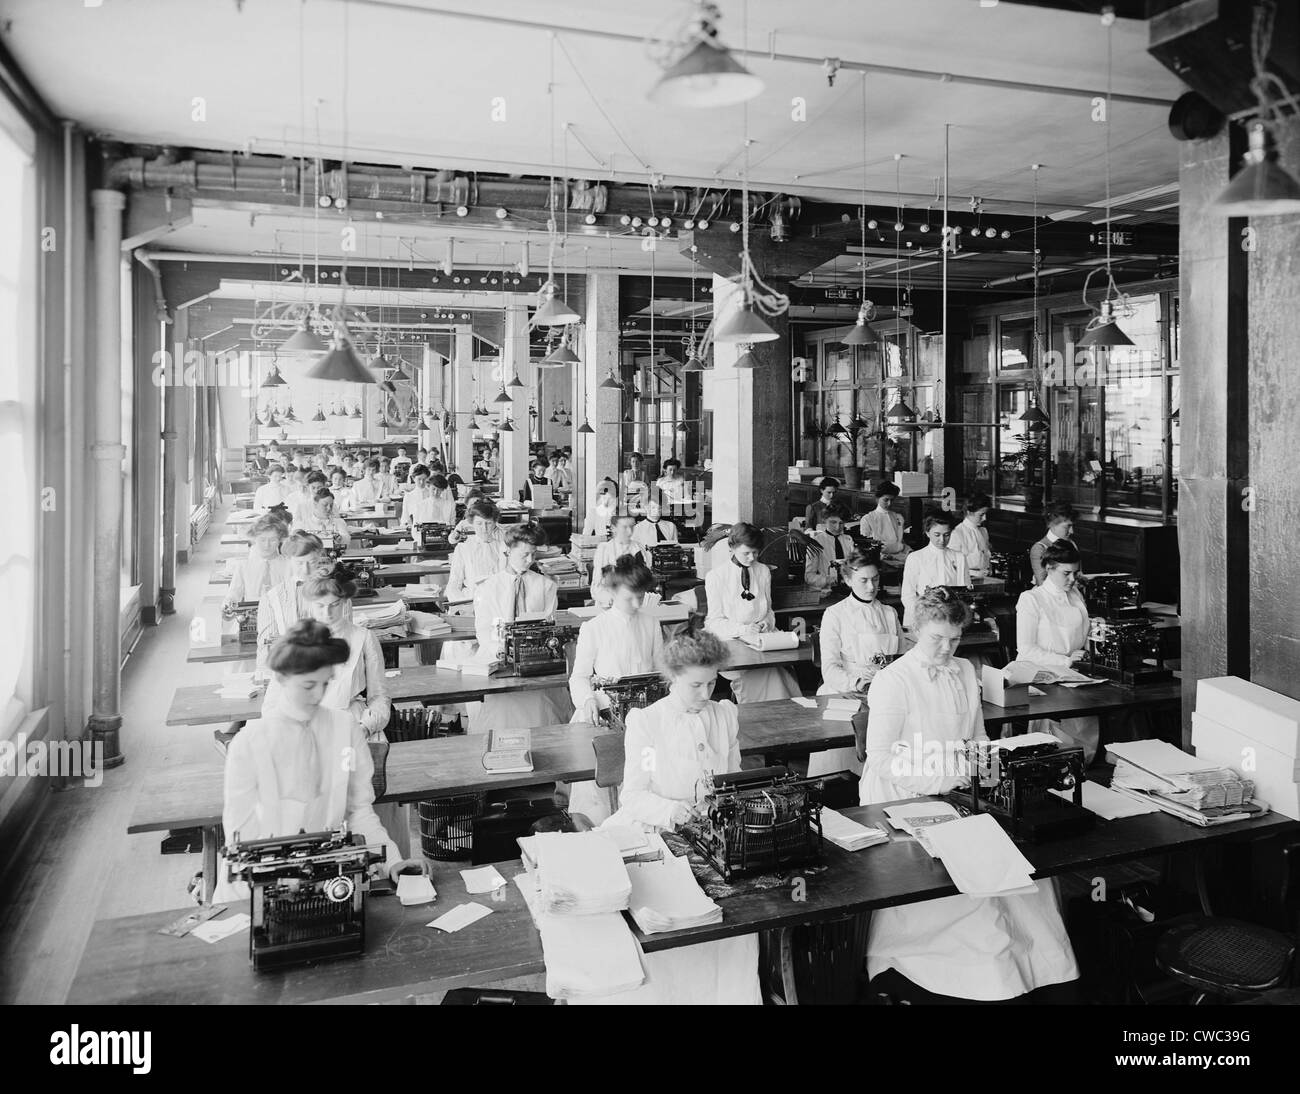 Scrittura dipartimento presso il National Cash Register Azienda Dayton, Ohio. Immagine mostra molti digitando le giovani donne vestite in alto Foto Stock